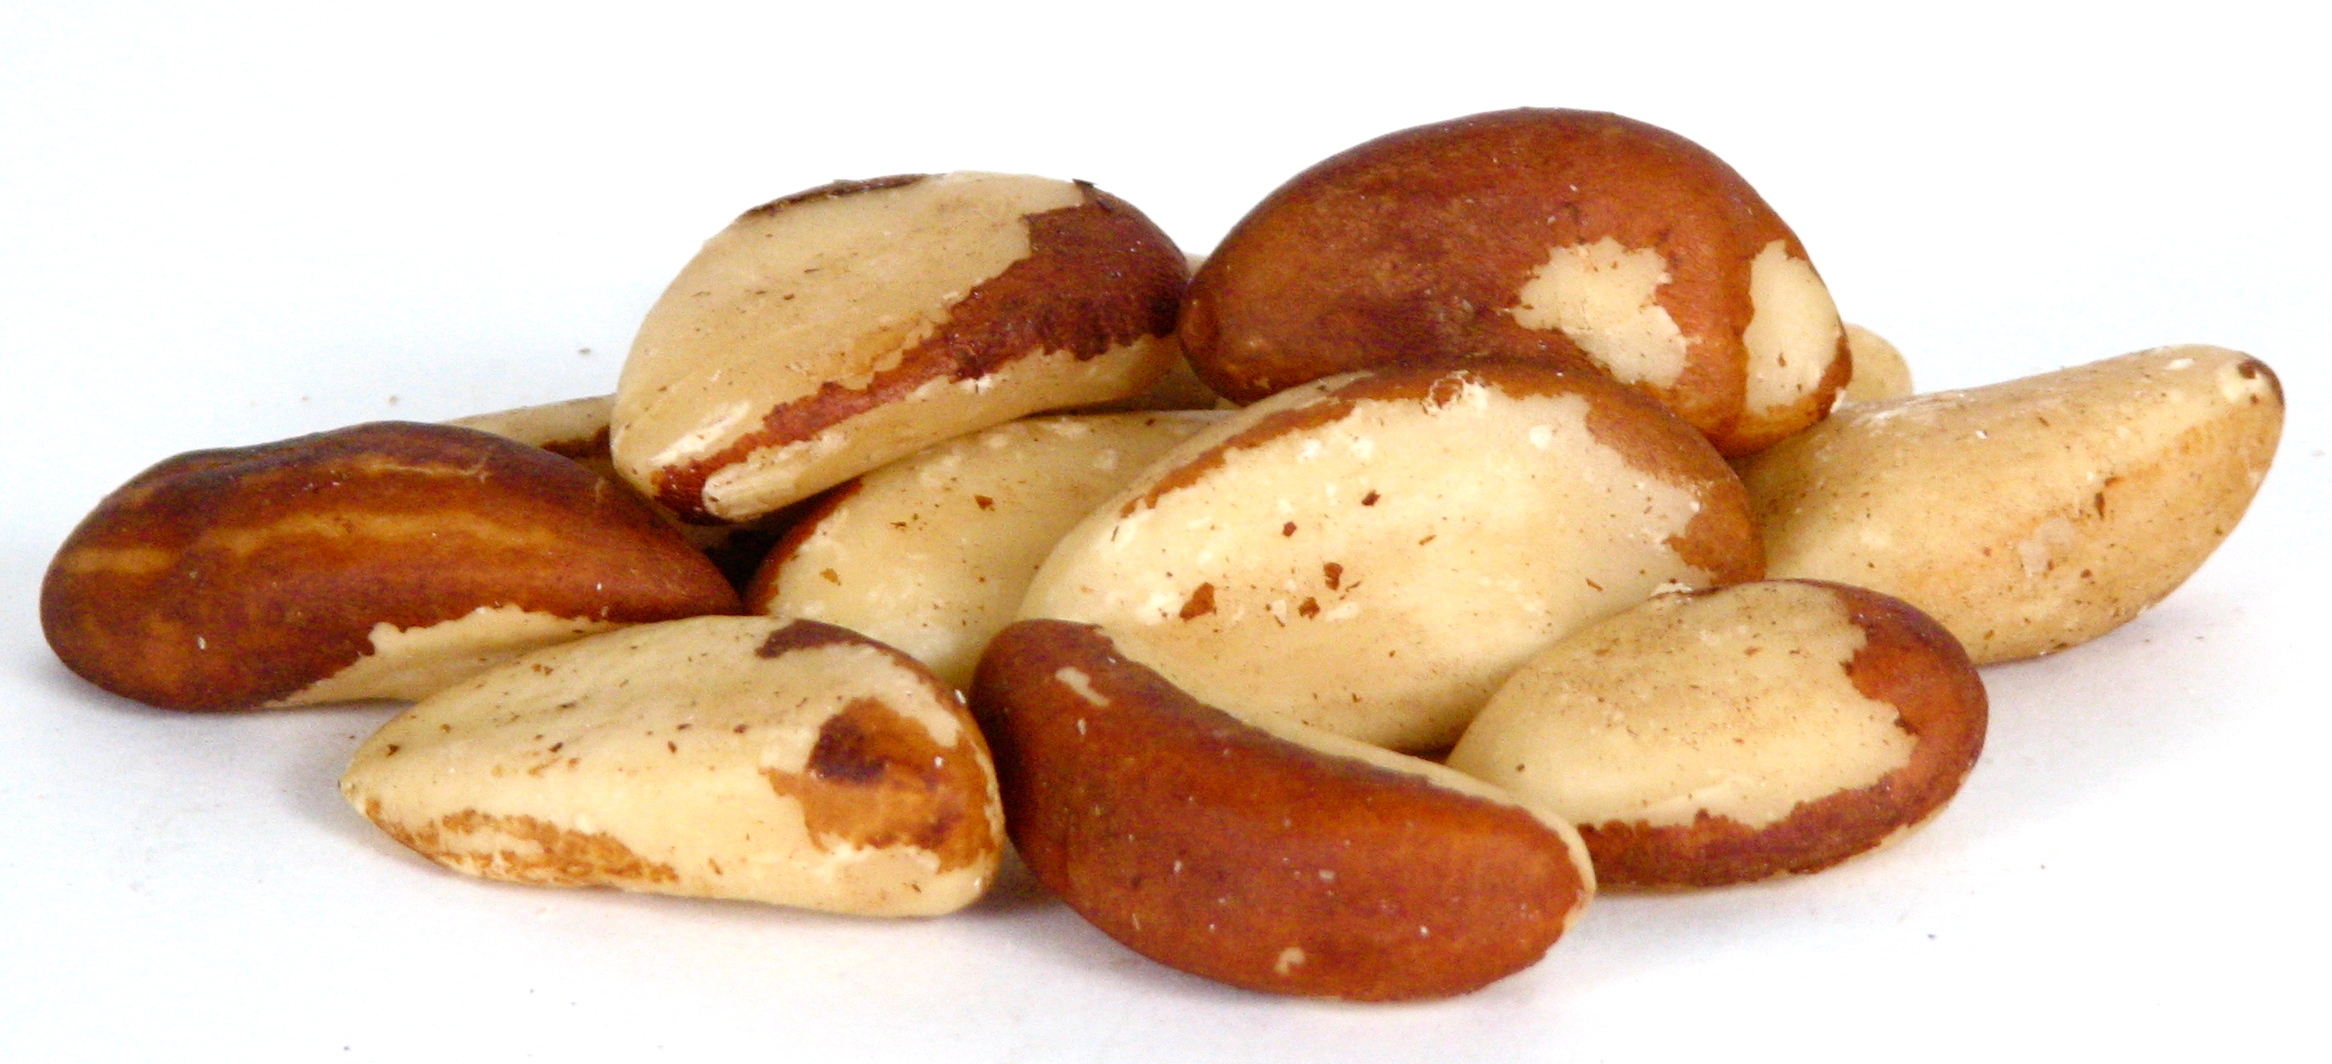 Brazil Nuts Radiation